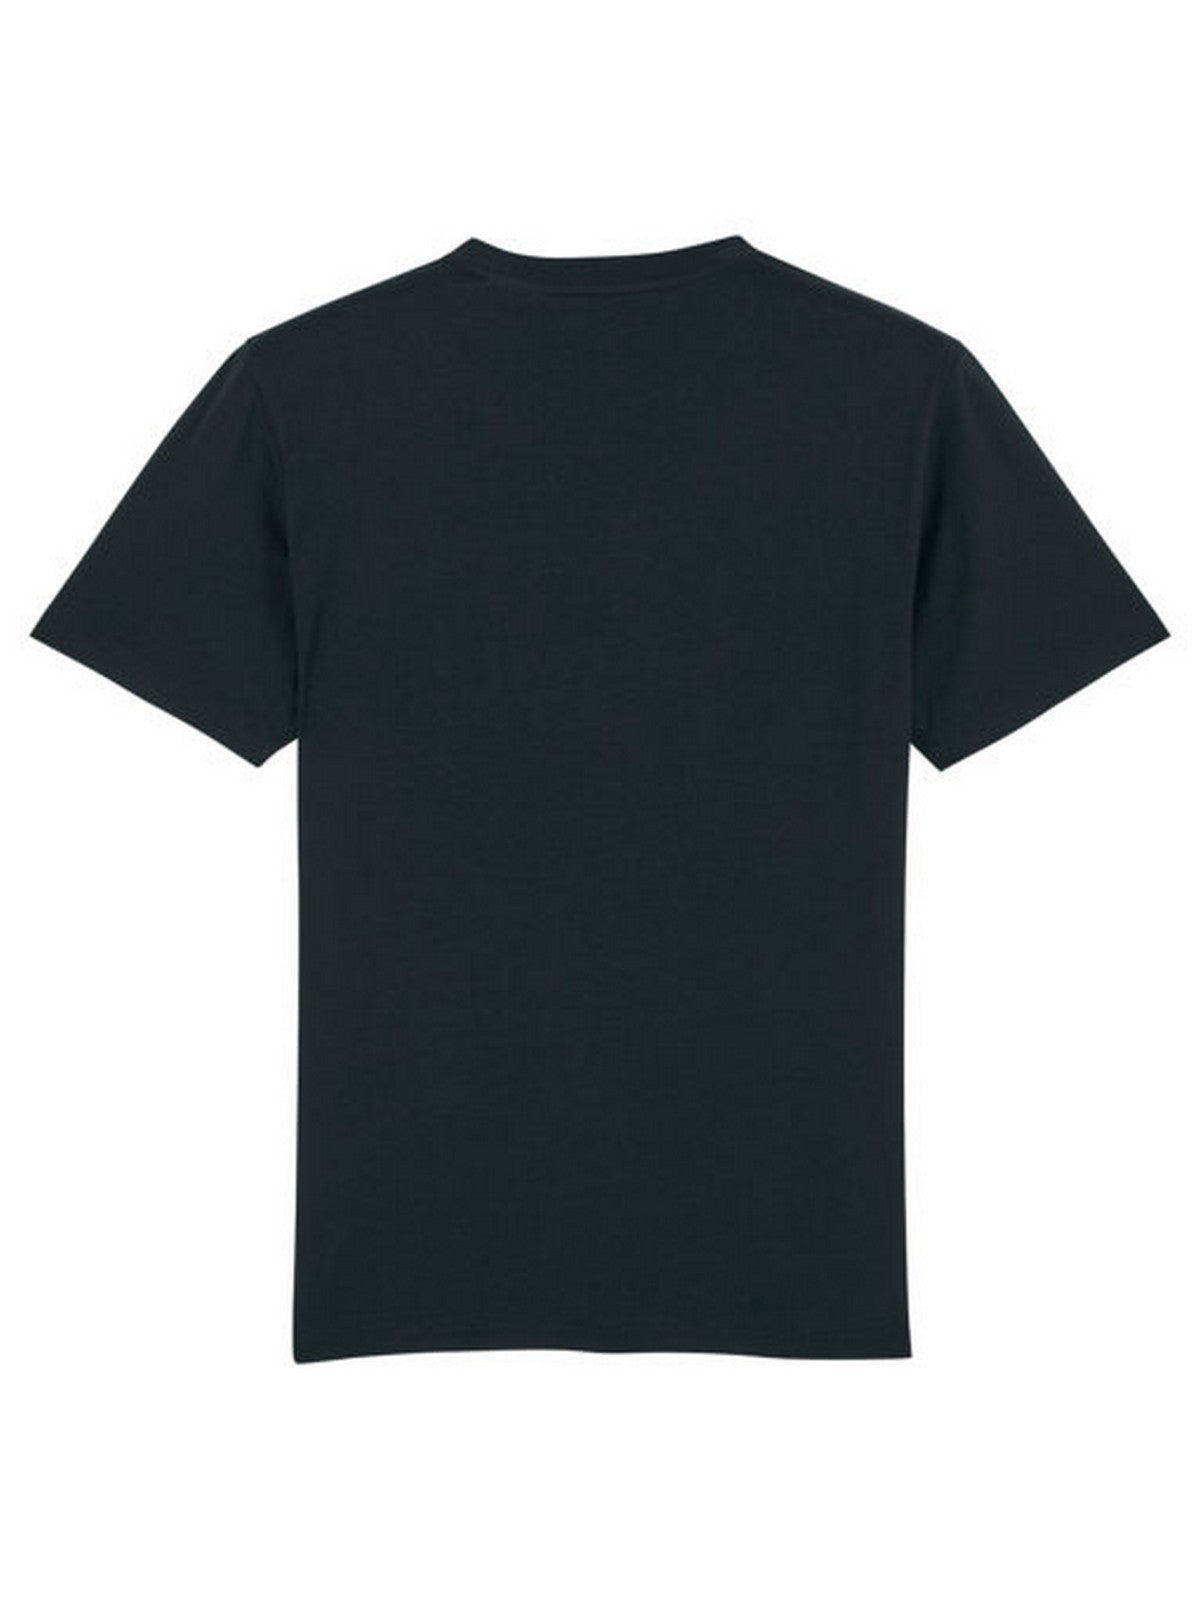 BARON FILOU T-Shirt et polo pour homme FILOU II Noir